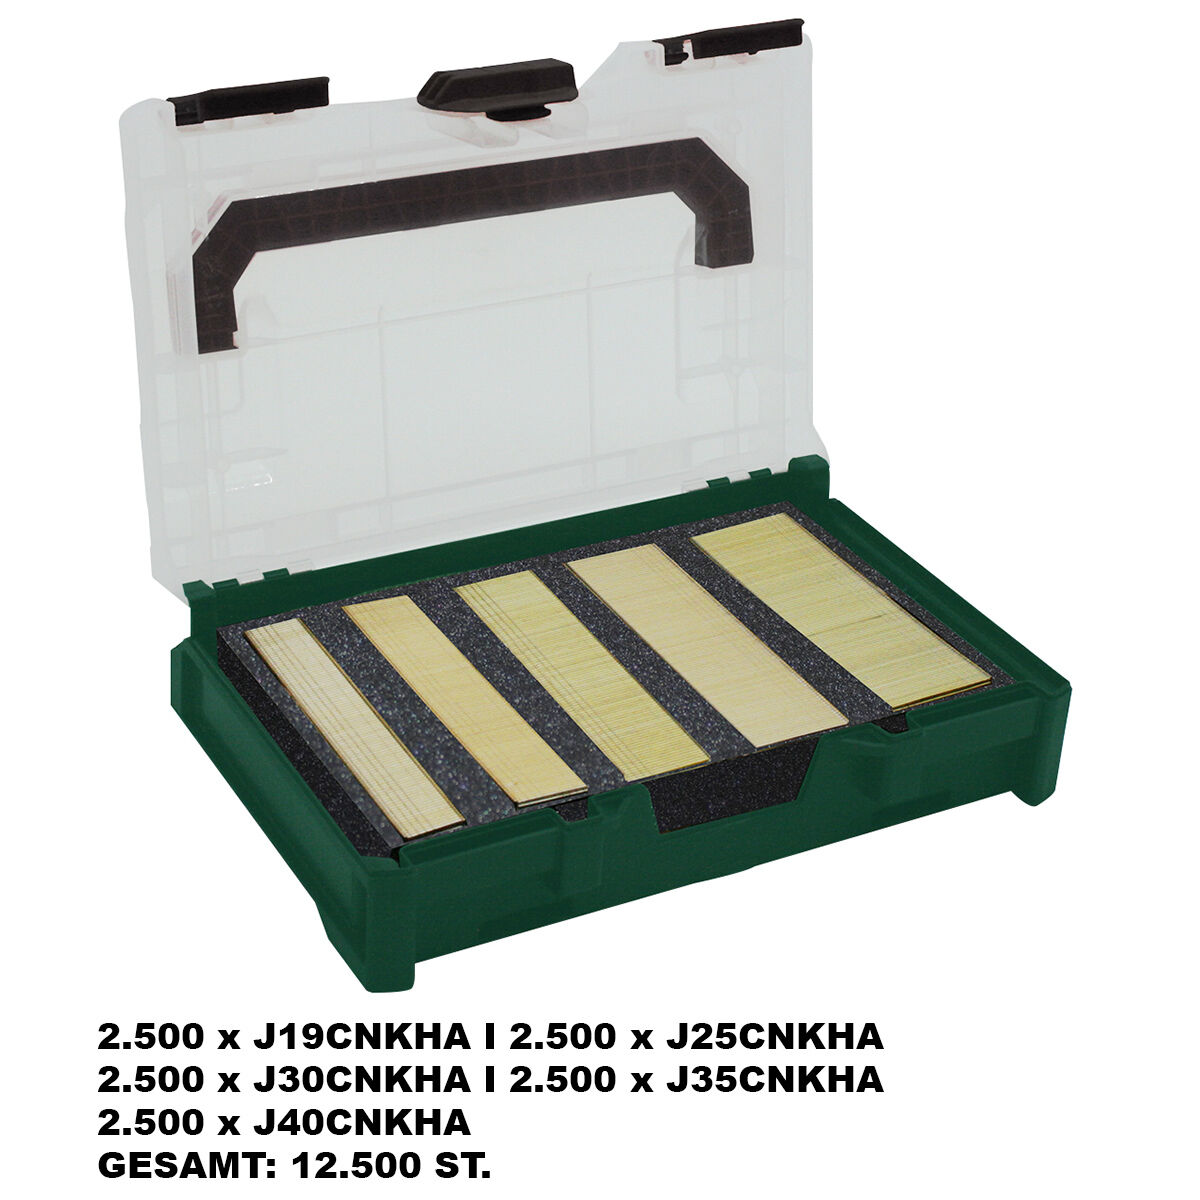 AKTION Prebena PROFI J-BOX I J19CNKHA + J25CNKHA + J30CNKHA + J35CNKHA + J40CNKHA